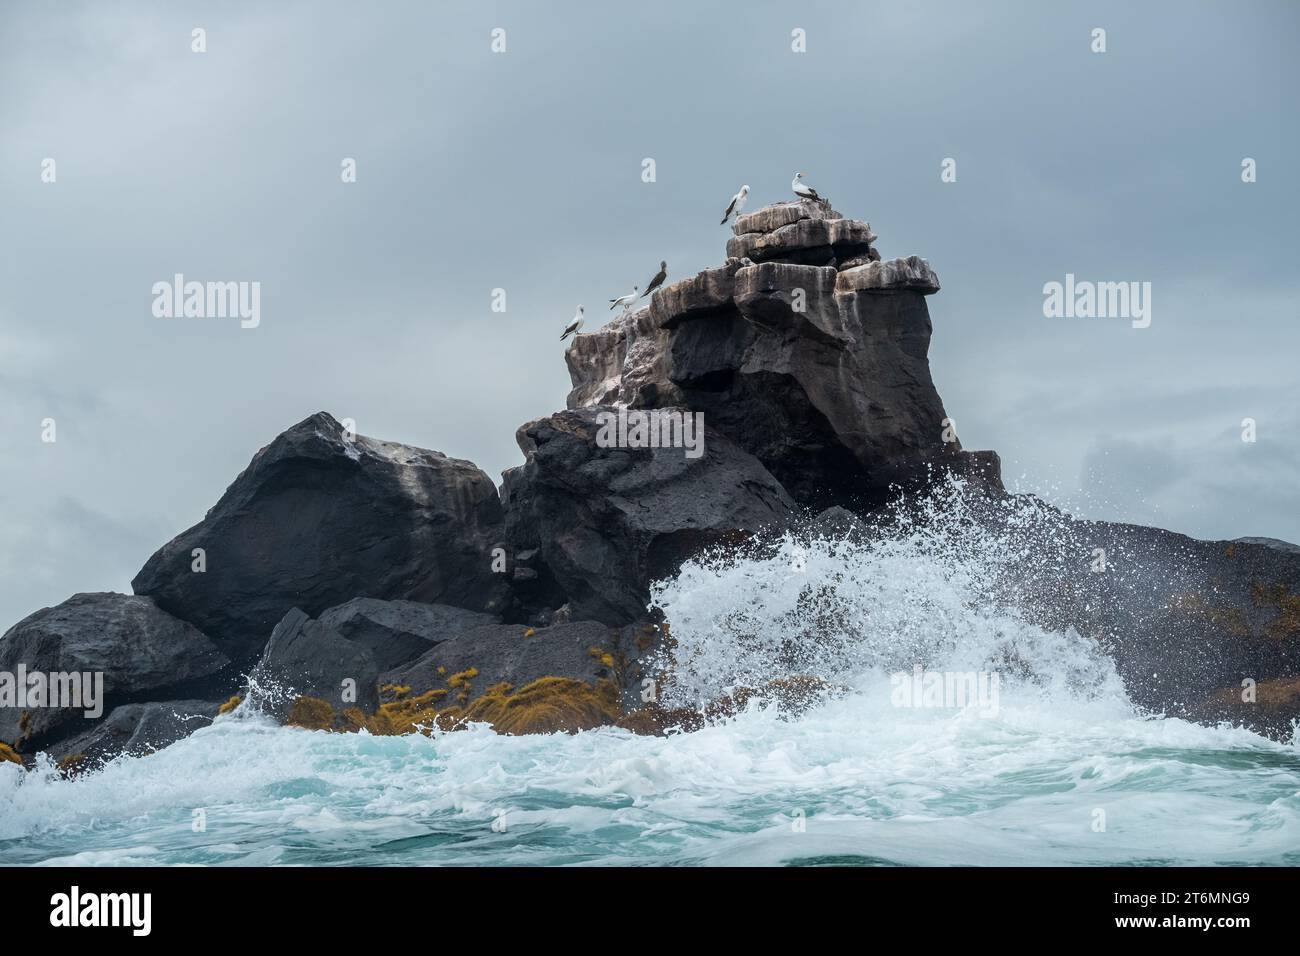 Des vagues s'écrasant sur les rochers d'une petite île avec quelques oiseaux perchés dessus Banque D'Images